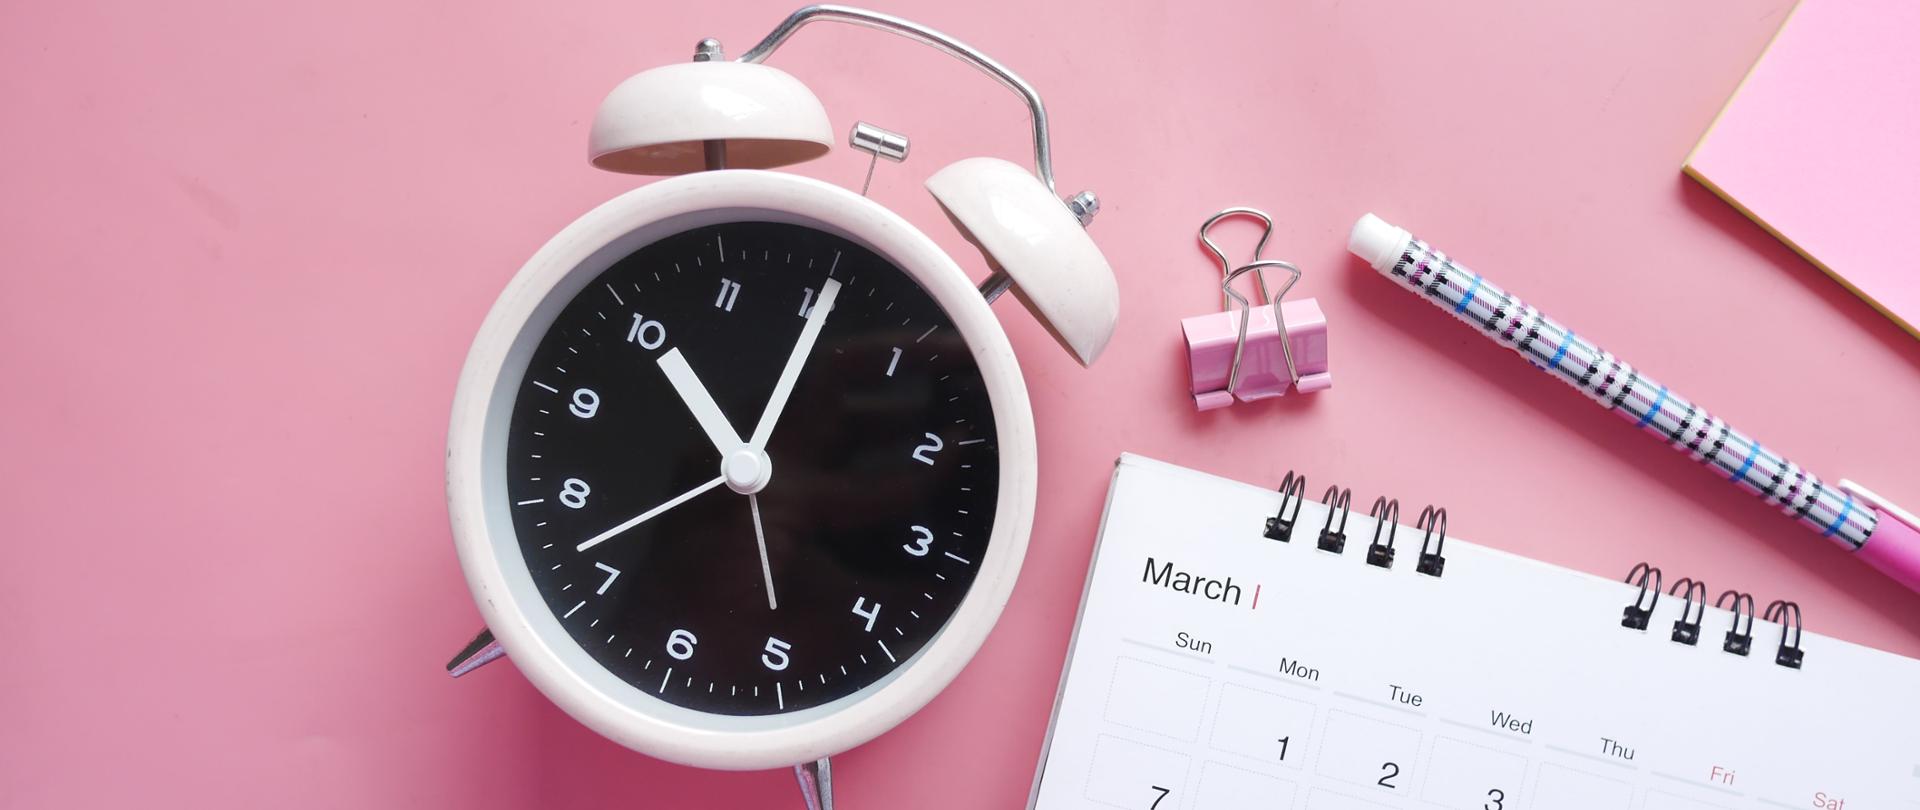 fotografia przedstawiająca jasnoróżowy budzik, różowy klips do papieru, długopis oraz fragment kalendarza oraz kolorowej kartki, całość zamieszczona na różowym tle